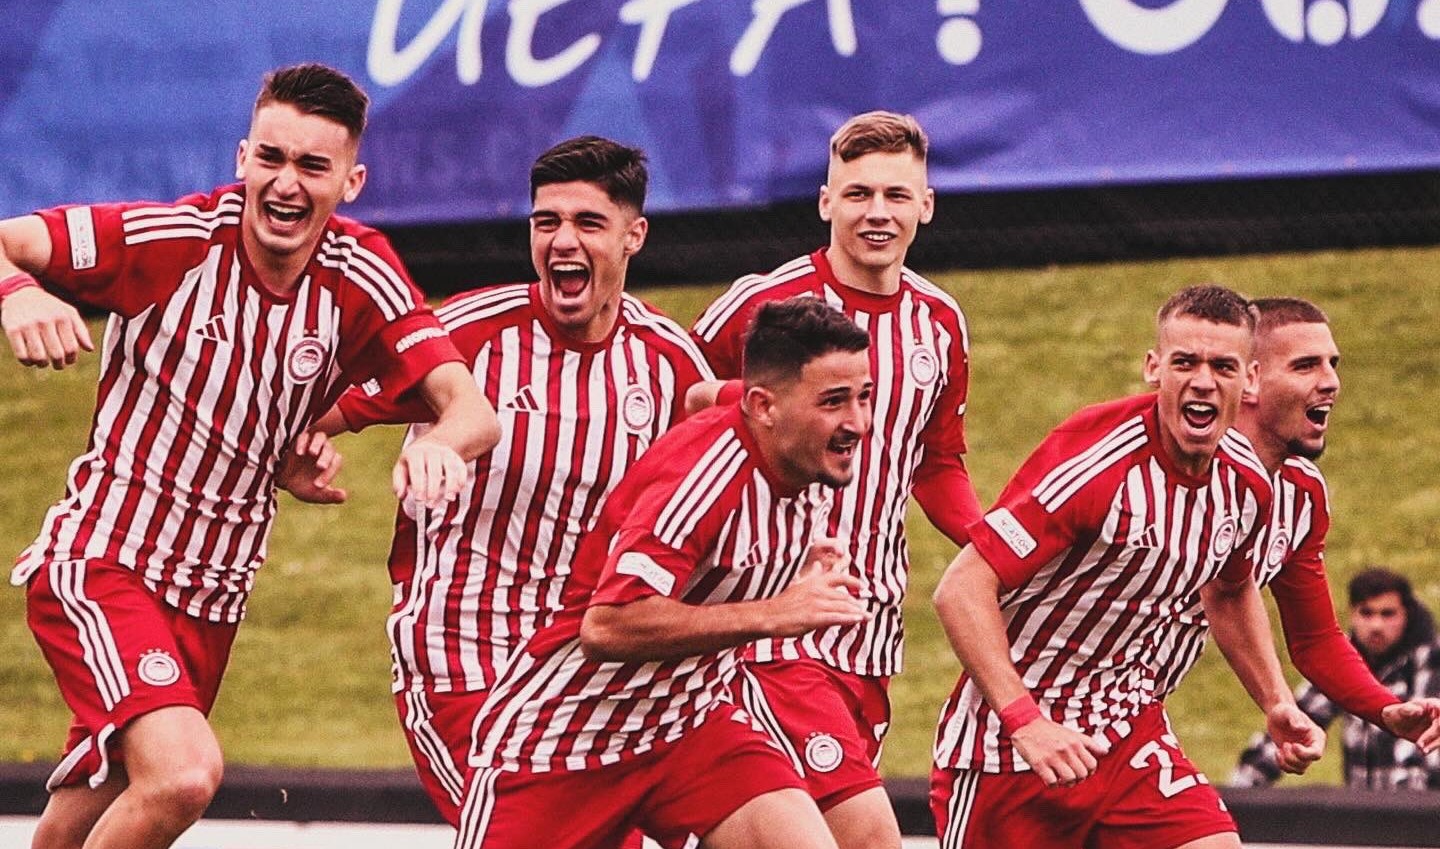 Youth League : L'Olympiakos s'adjuge son premier titre en écrasant l'AC Milan